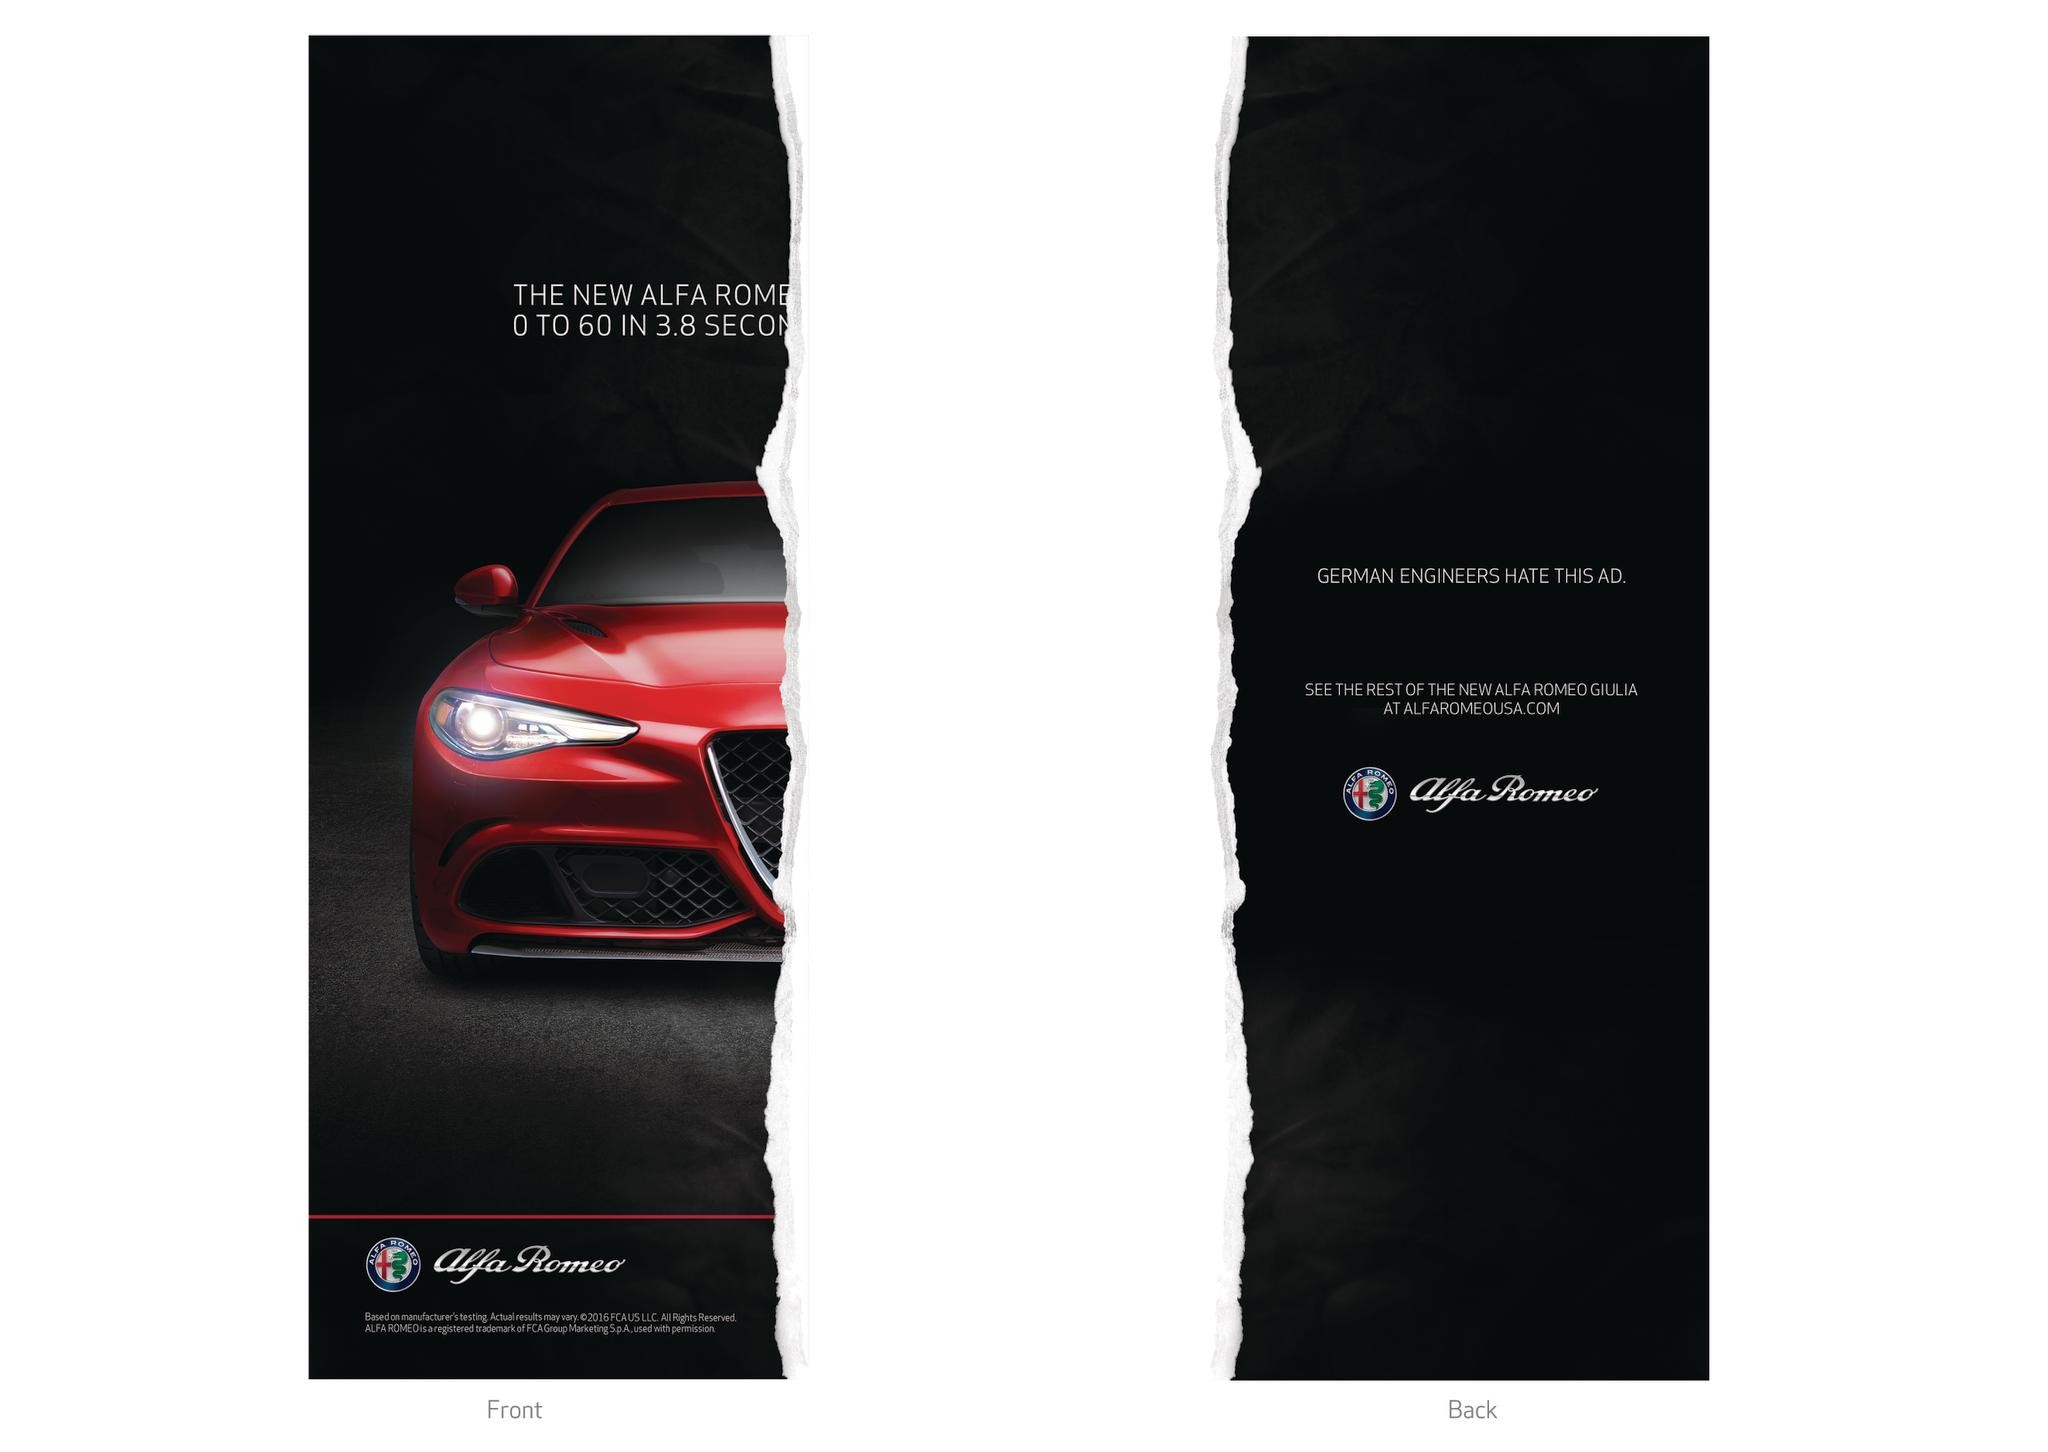 Alfa Romeo - Giulia Print Campaign